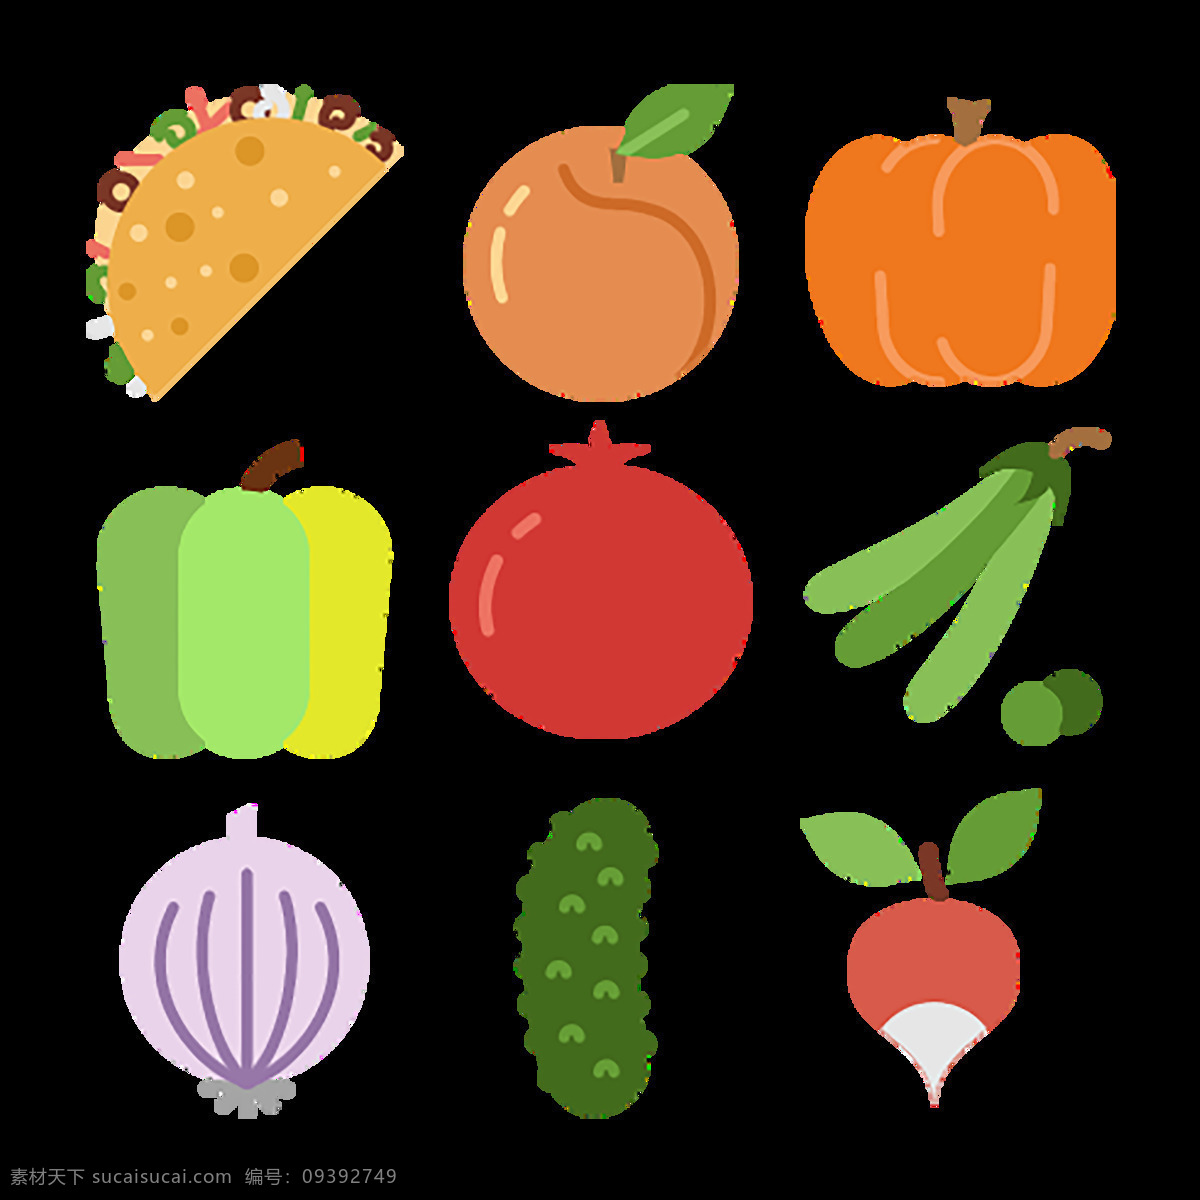 彩色 蔬菜 图标 美食 健康 水果 橙 柠檬 奶酪 鸡蛋 葡萄 菠萝 番茄 食品 胡萝卜 生菜 手绘 食物 饮品